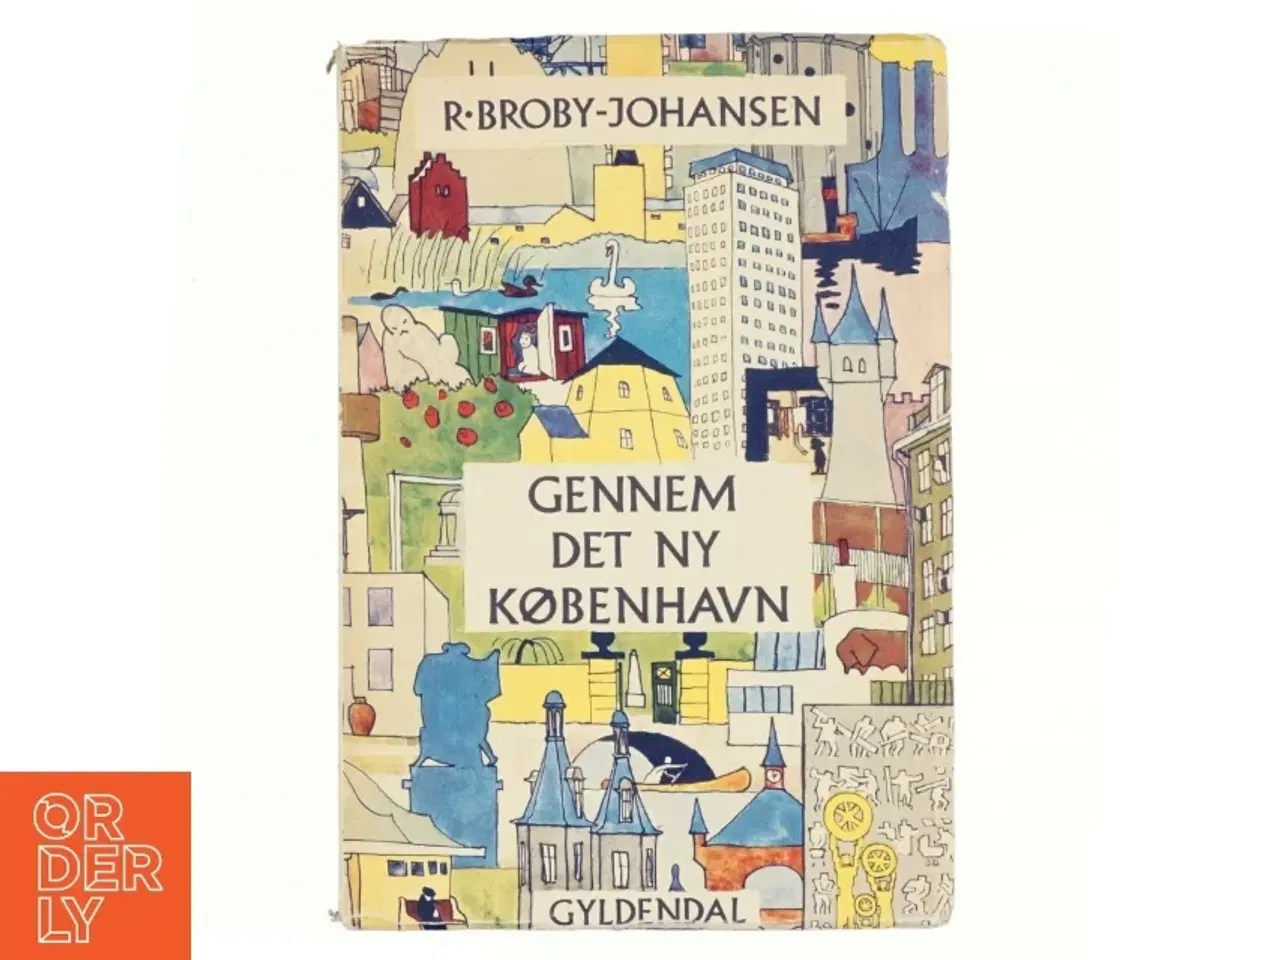 Billede 1 - Gennem det ny København af R. Broby-Johansen (bog)